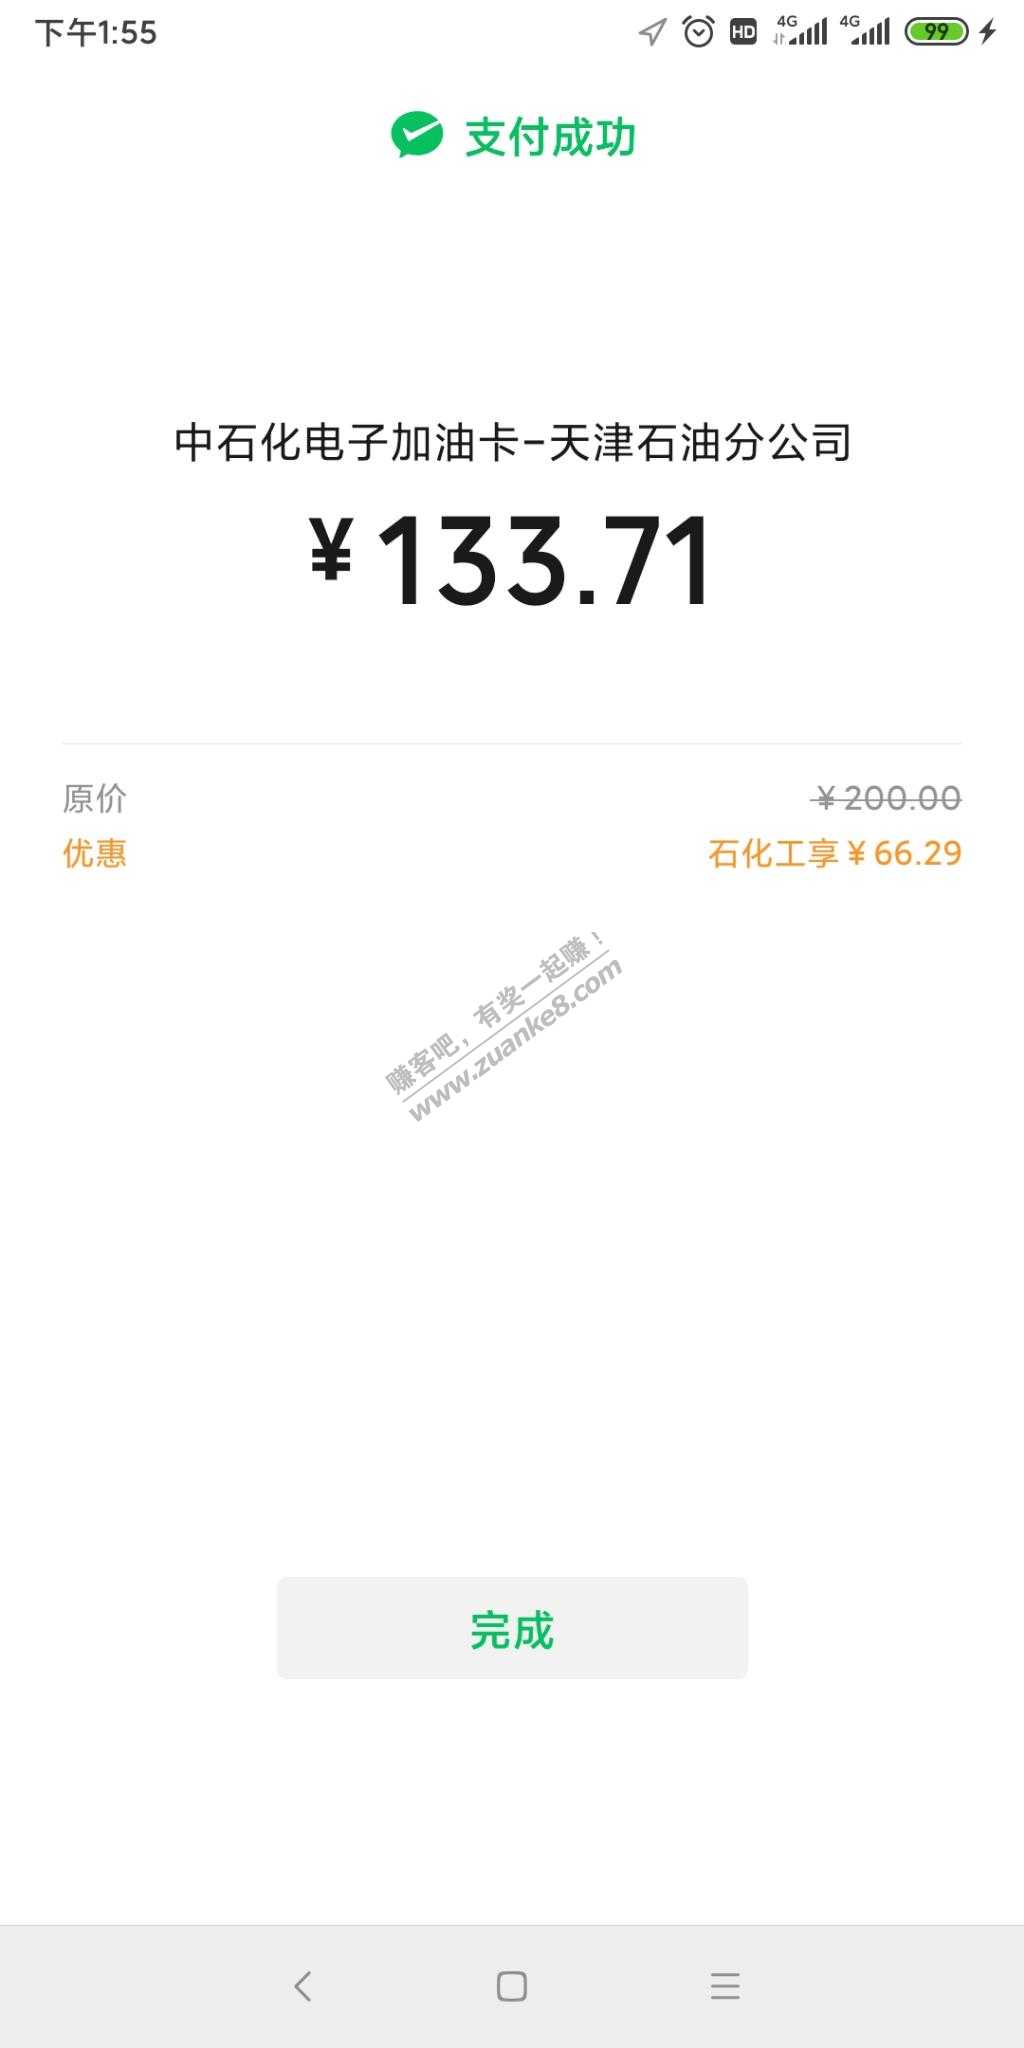 石化天津有了-惠小助(52huixz.com)